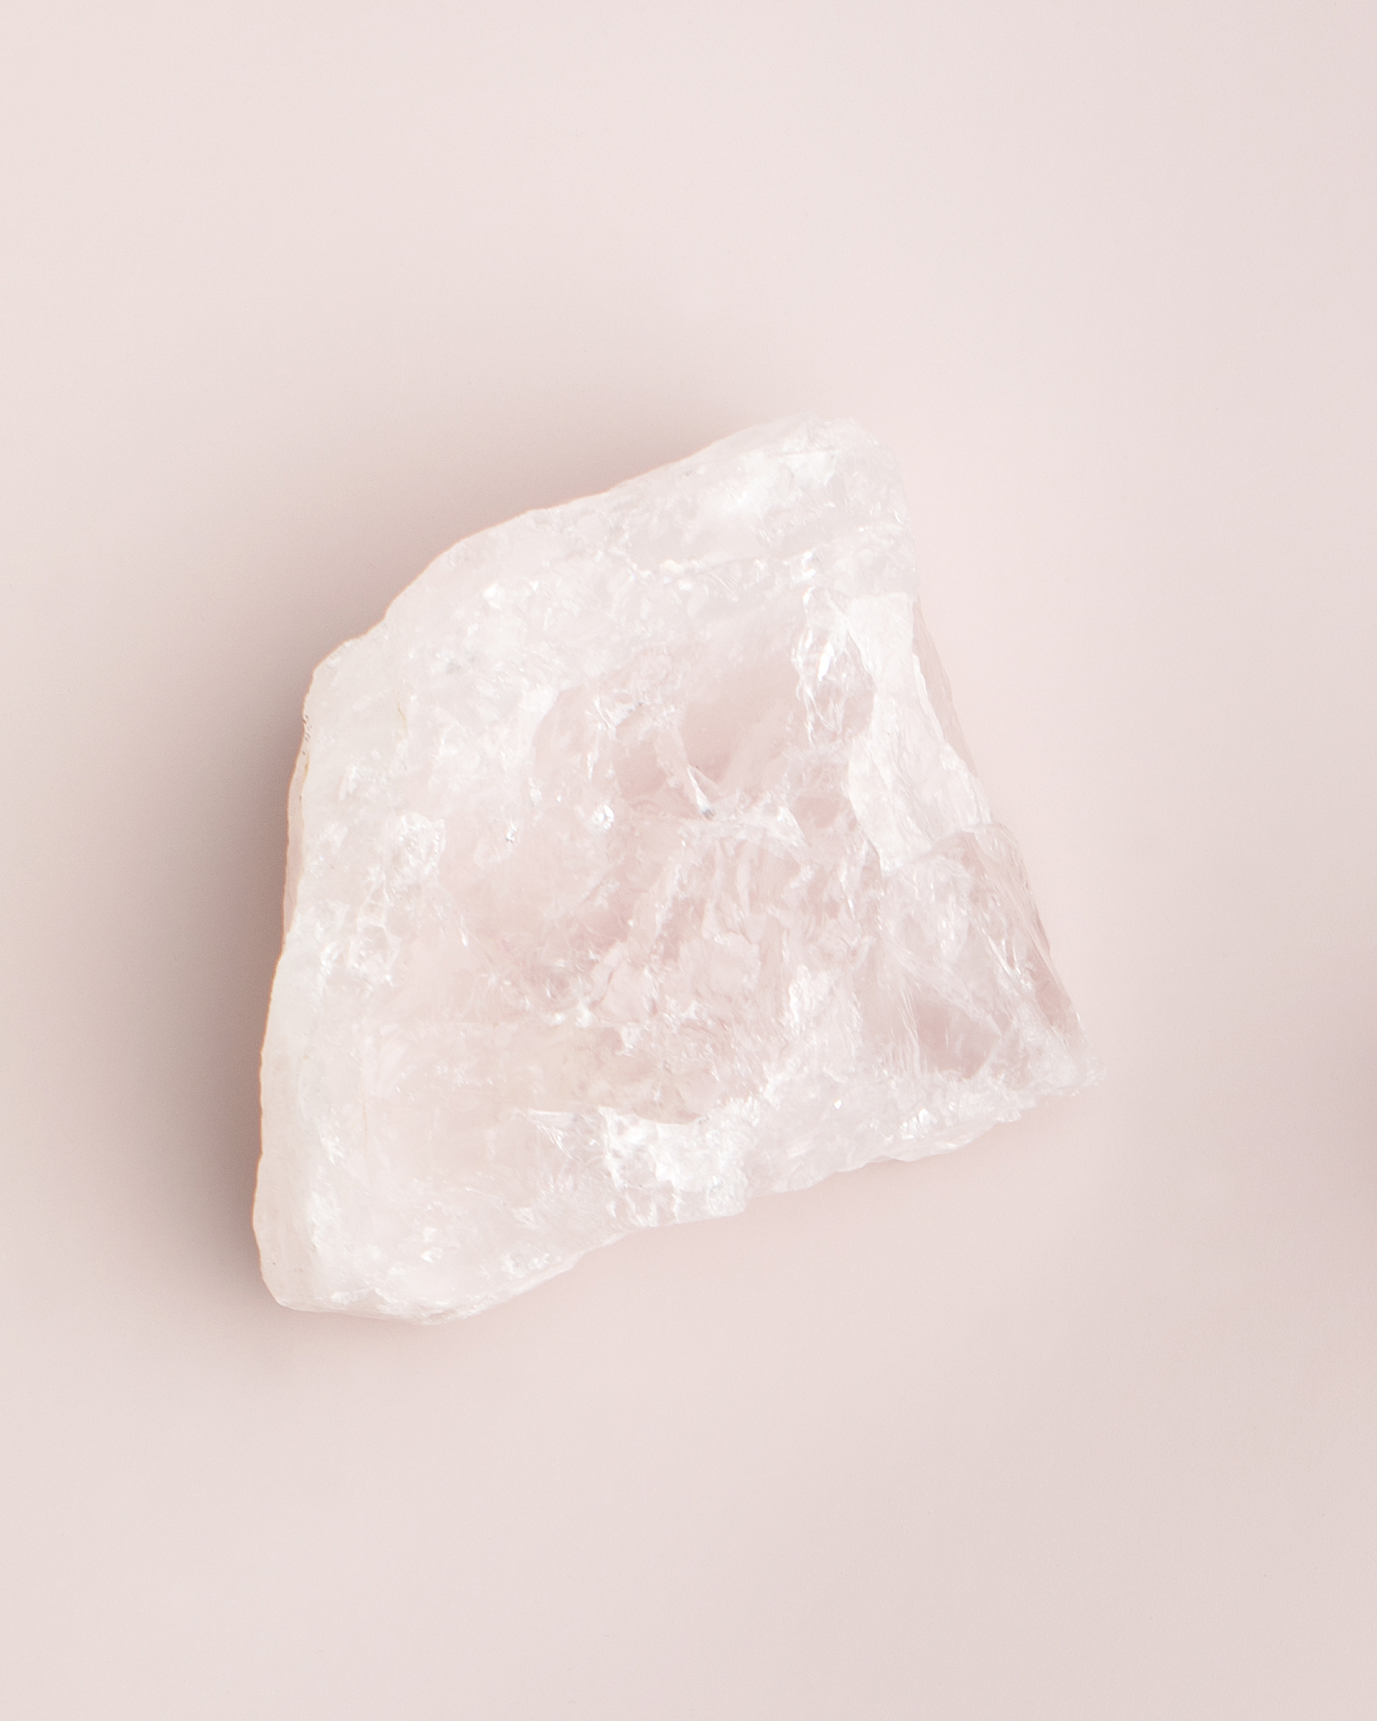 Rose quartz crystal